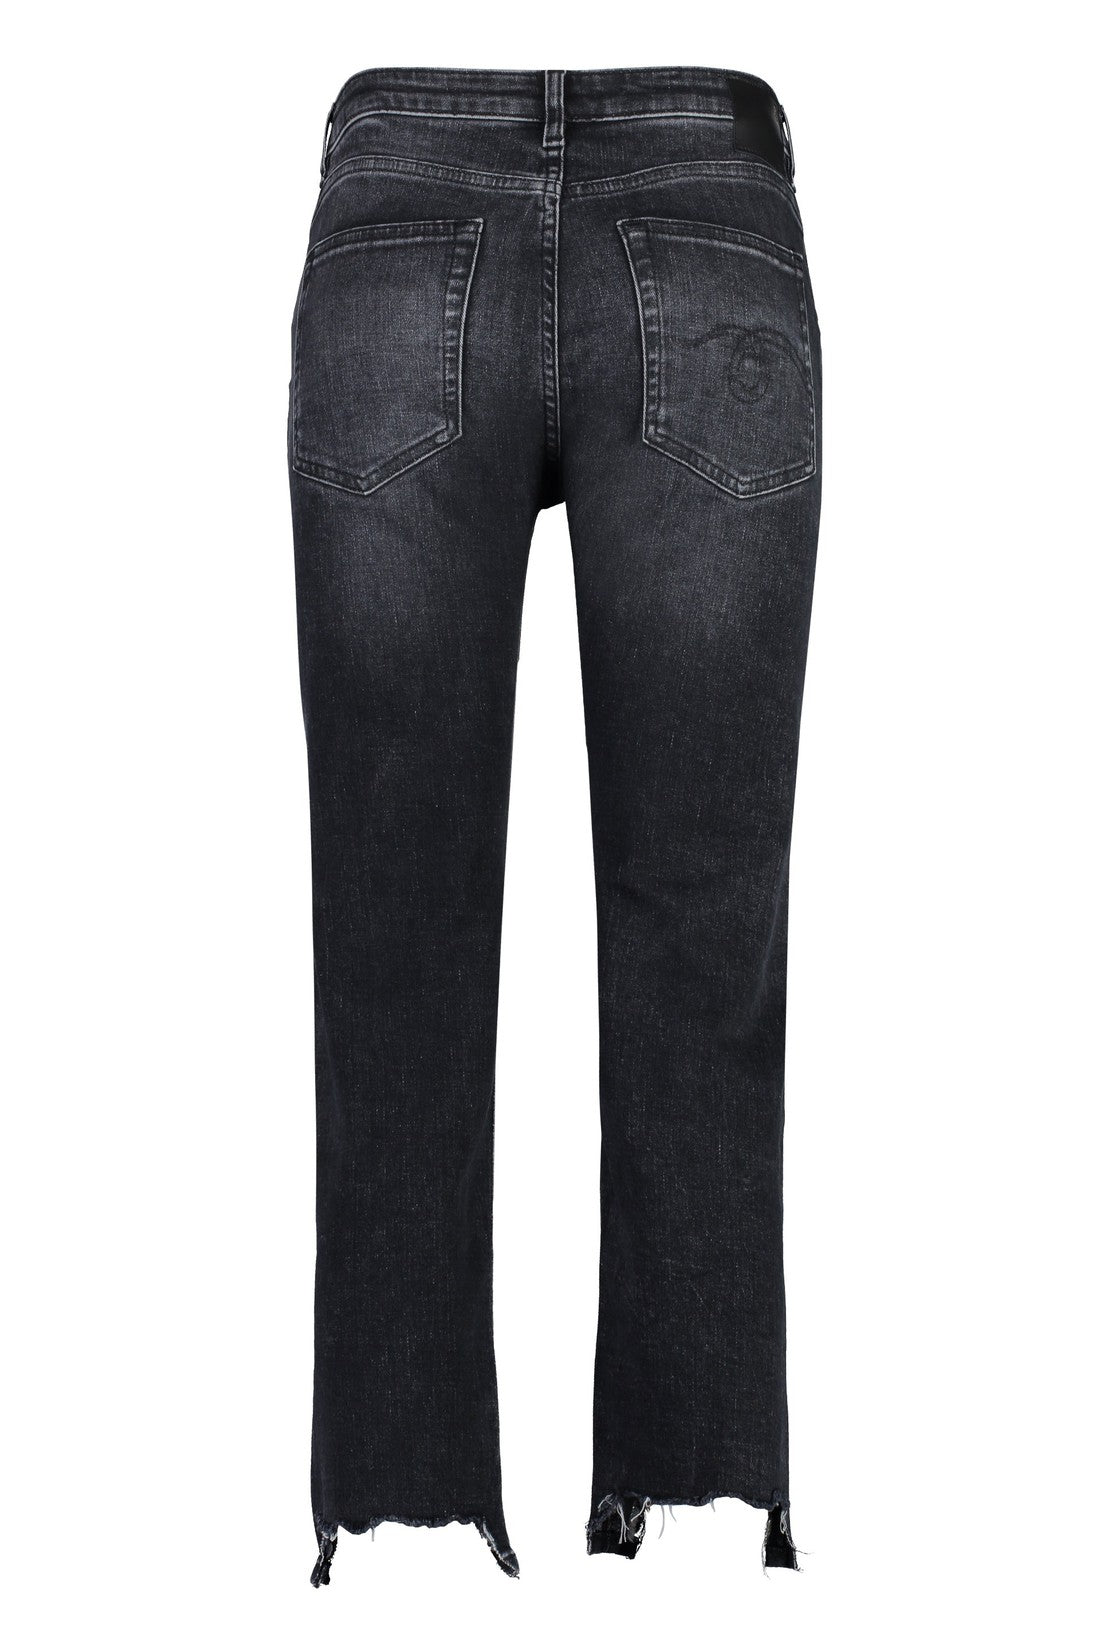 R13-OUTLET-SALE-5-pocket straight-leg jeans-ARCHIVIST